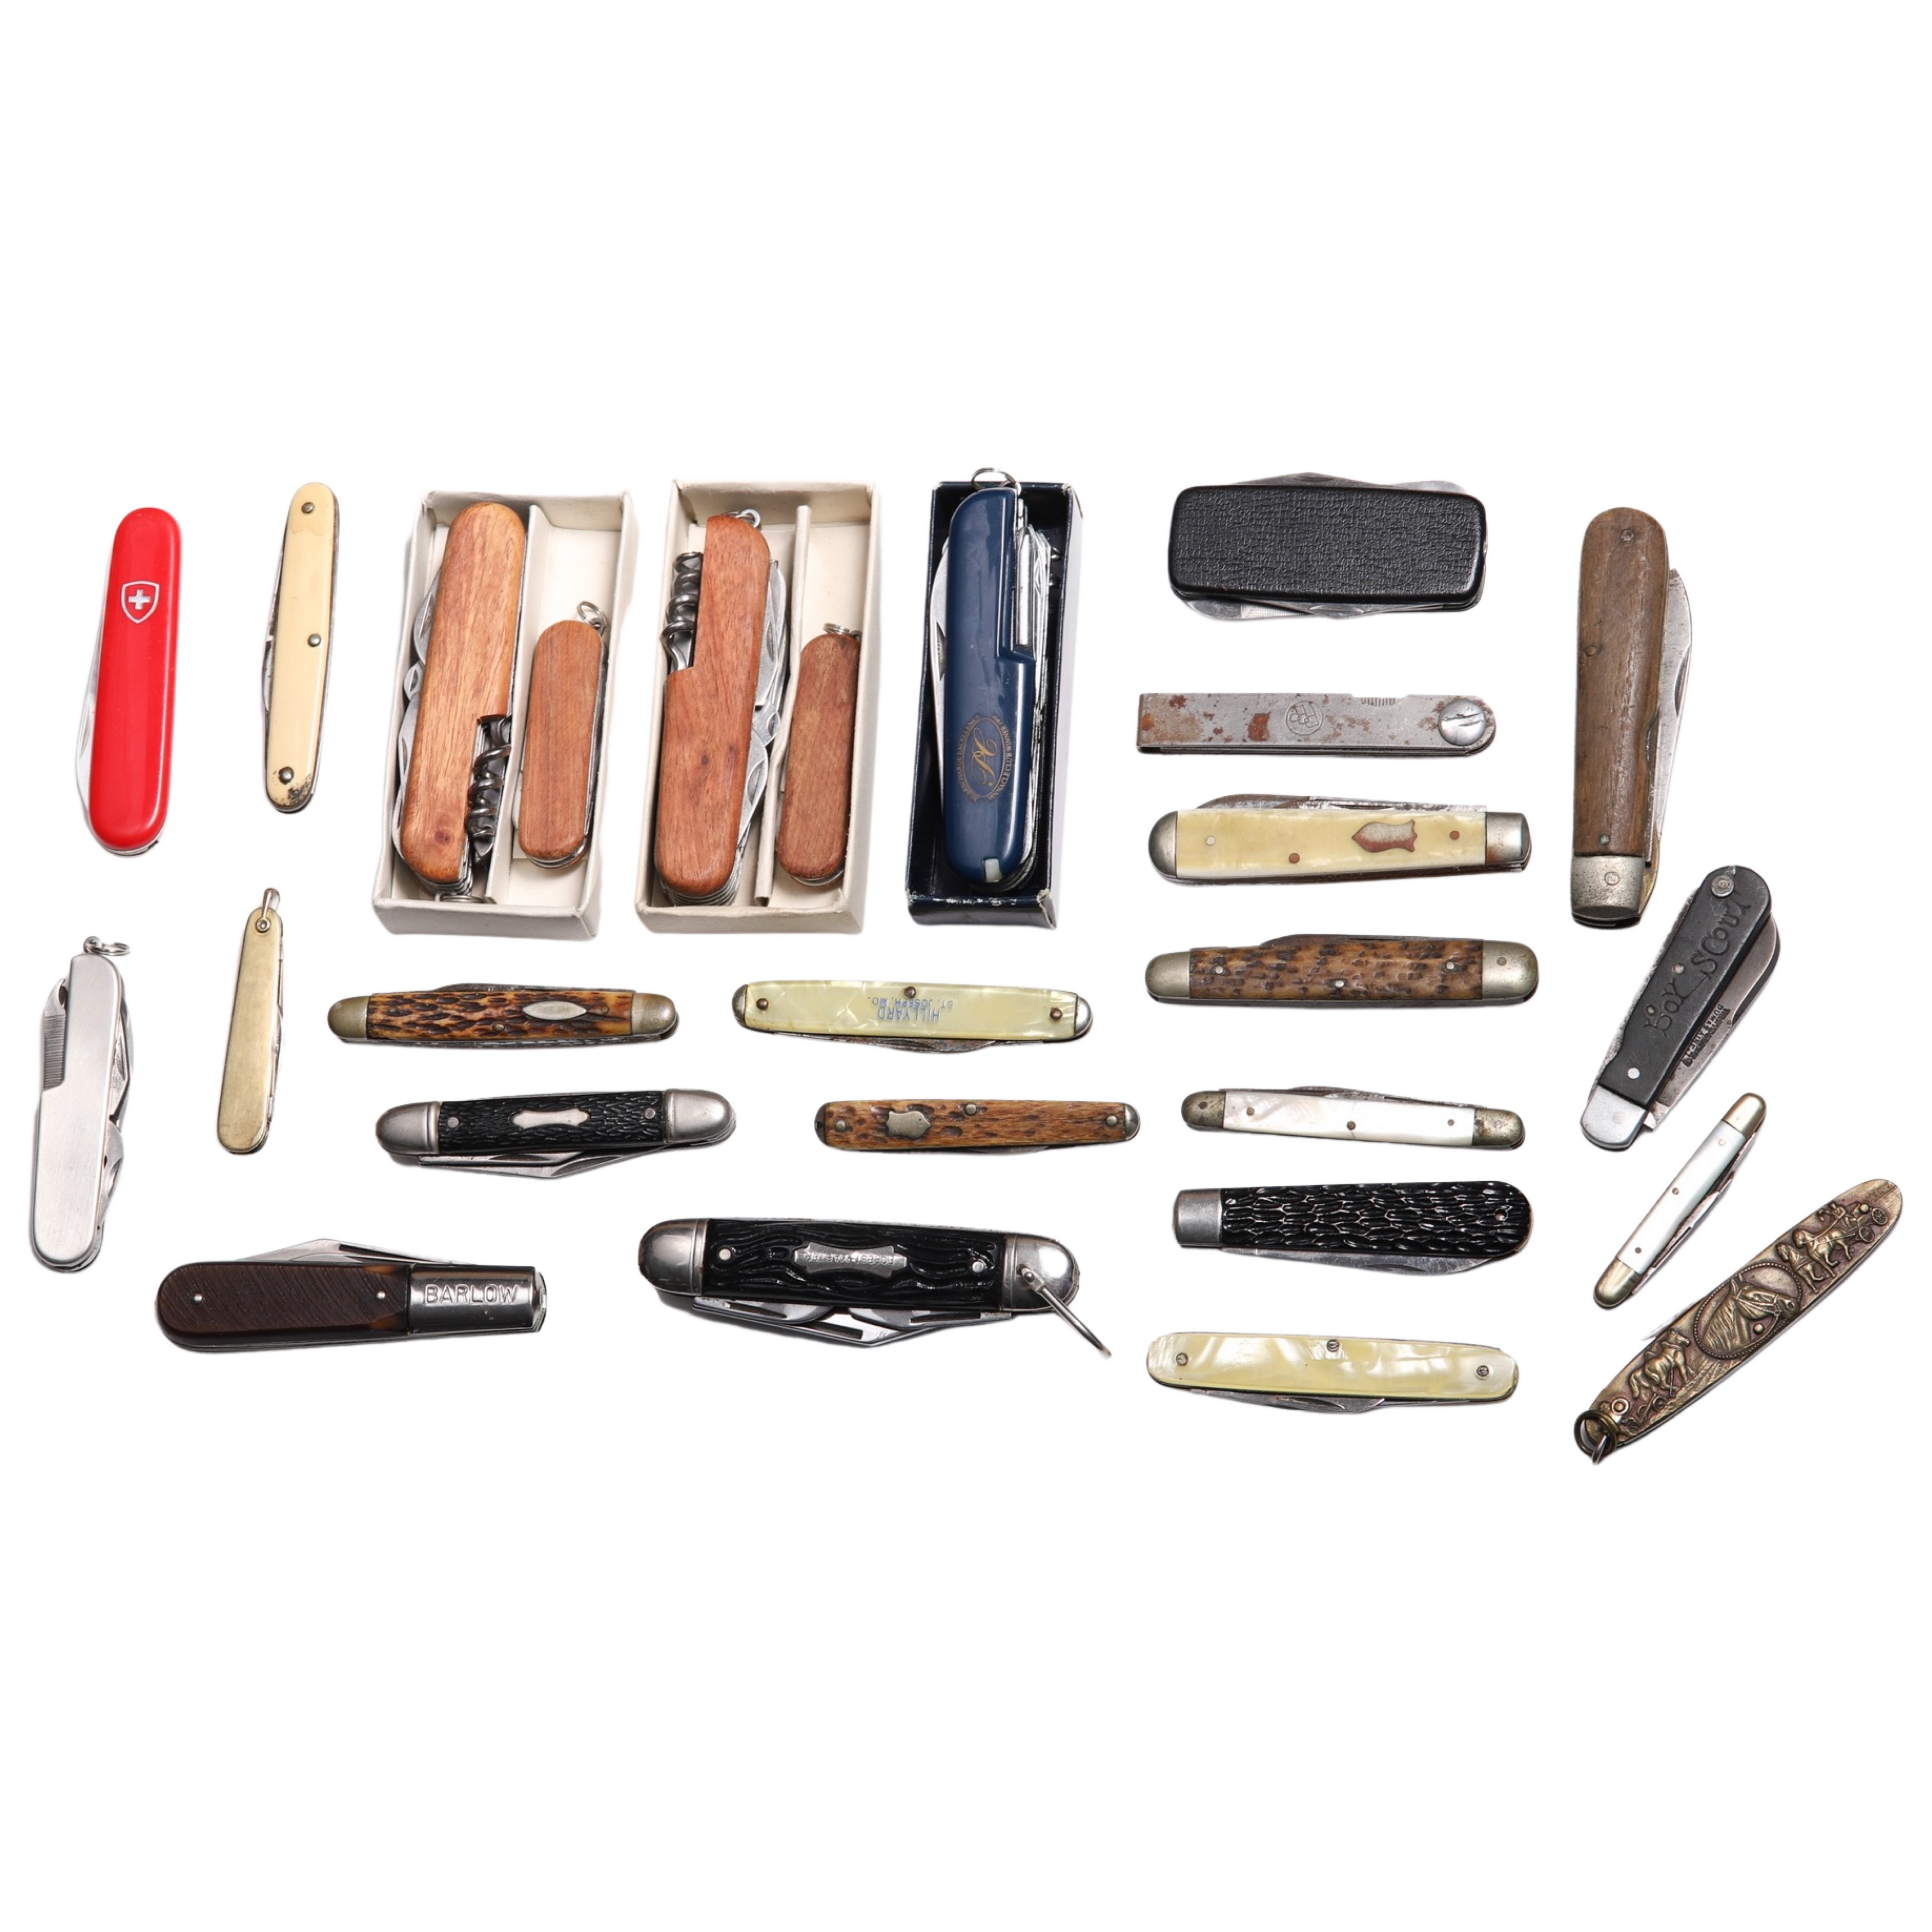 (26) Pocket knives, including Depose